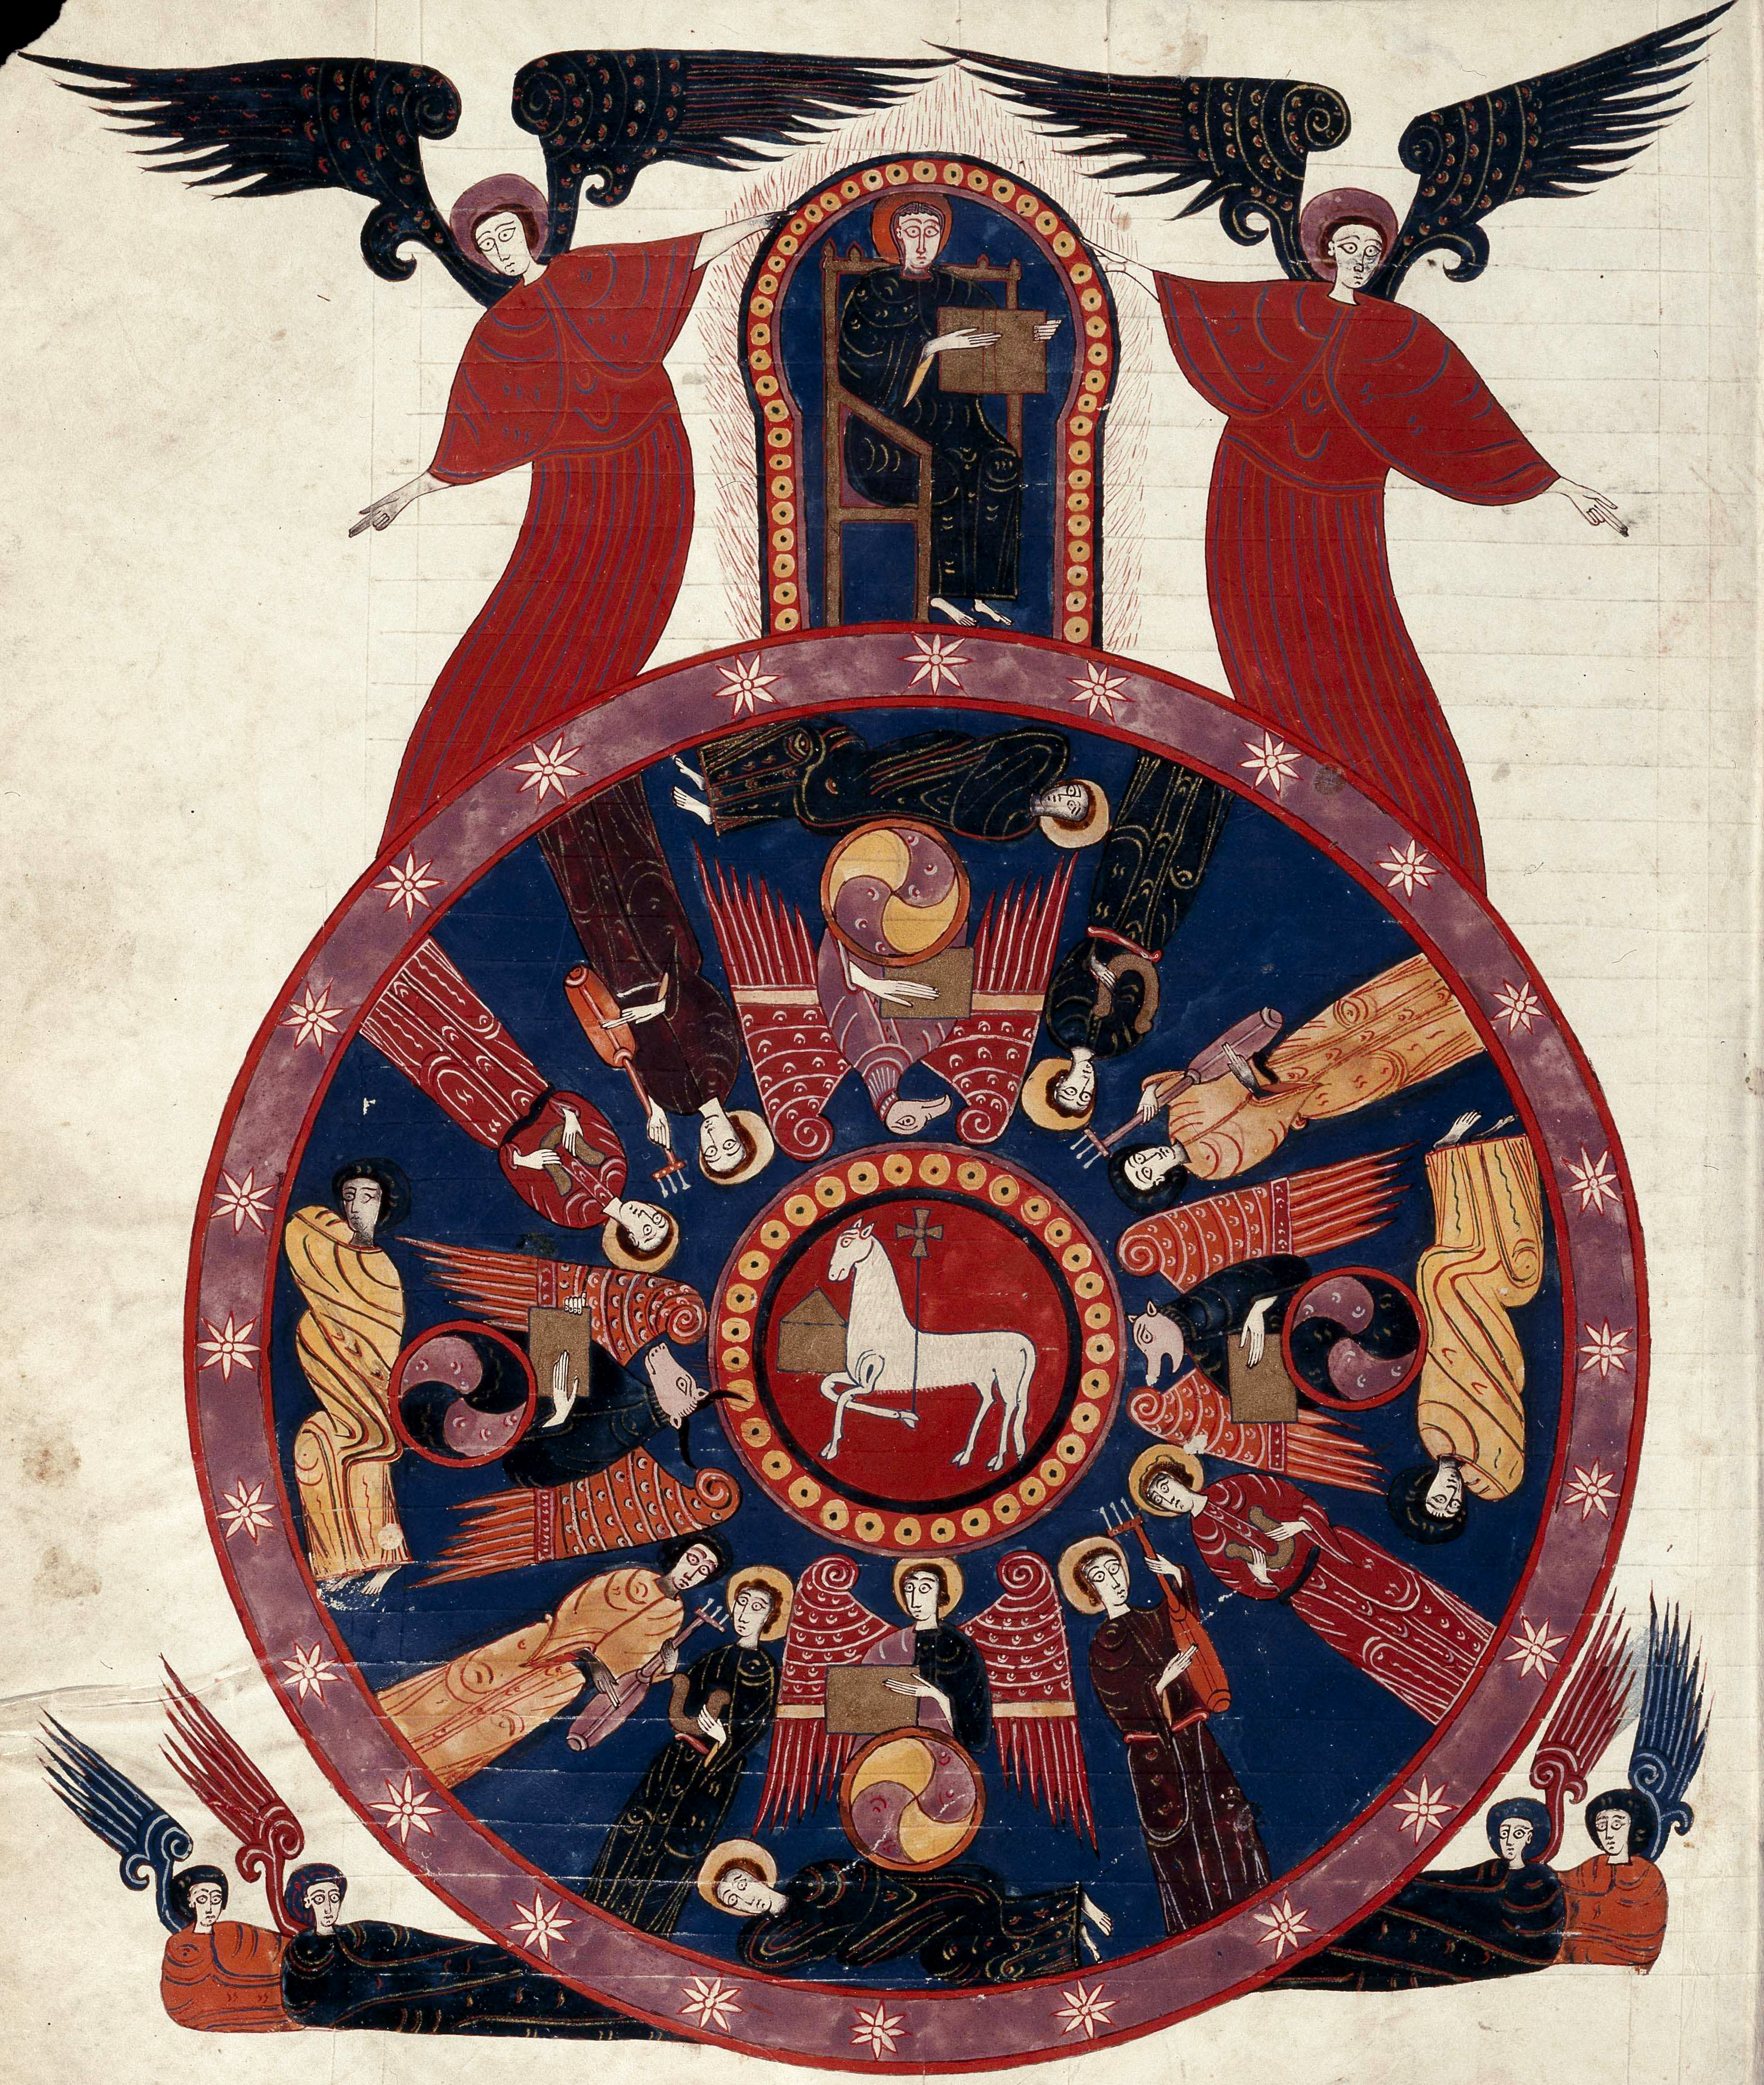 Beatus de Facundus, p. 233 – L’Agneau au centre du cercle des adorateurs de Dieu, signifiant par là-même son statut d’être divin, il est le seul à pouvoir ouvrir le livre aux sept sceaux (Ap 5).